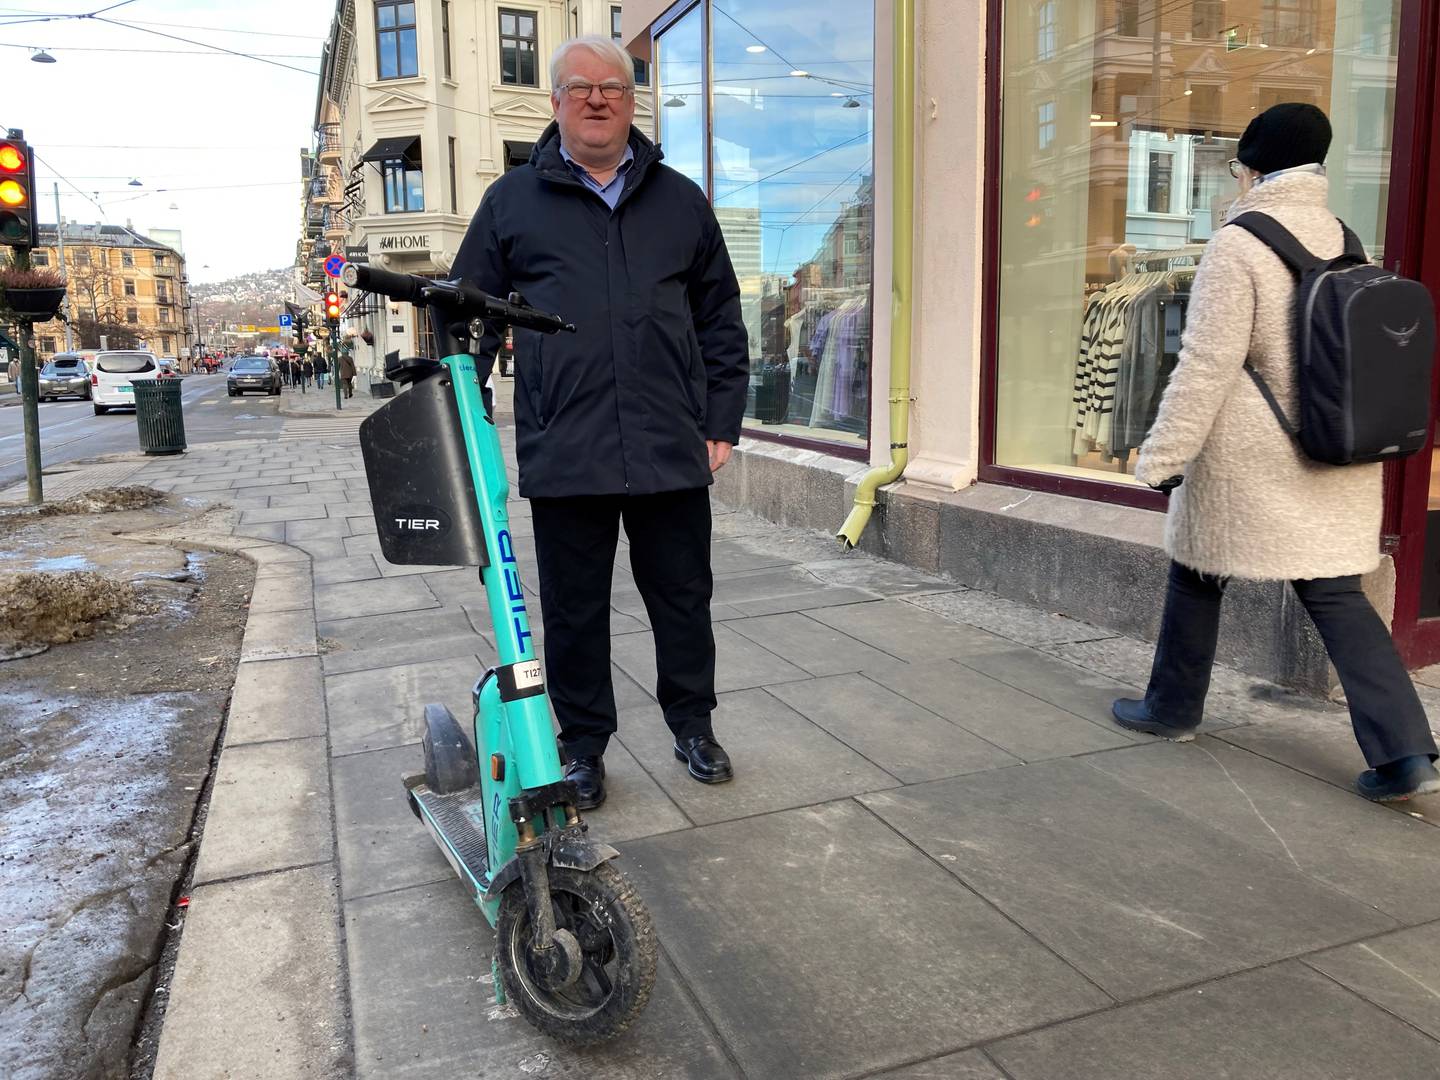 – Norge og Island er de eneste landene i Europa hvor det fortsatt er lov å bruke elsparkesykkel på fortauene, forteller Terje André Olsen. Med elsparkesykler på fortauene blir det nødvendigvis mindre plass til de gående, påpeker han.